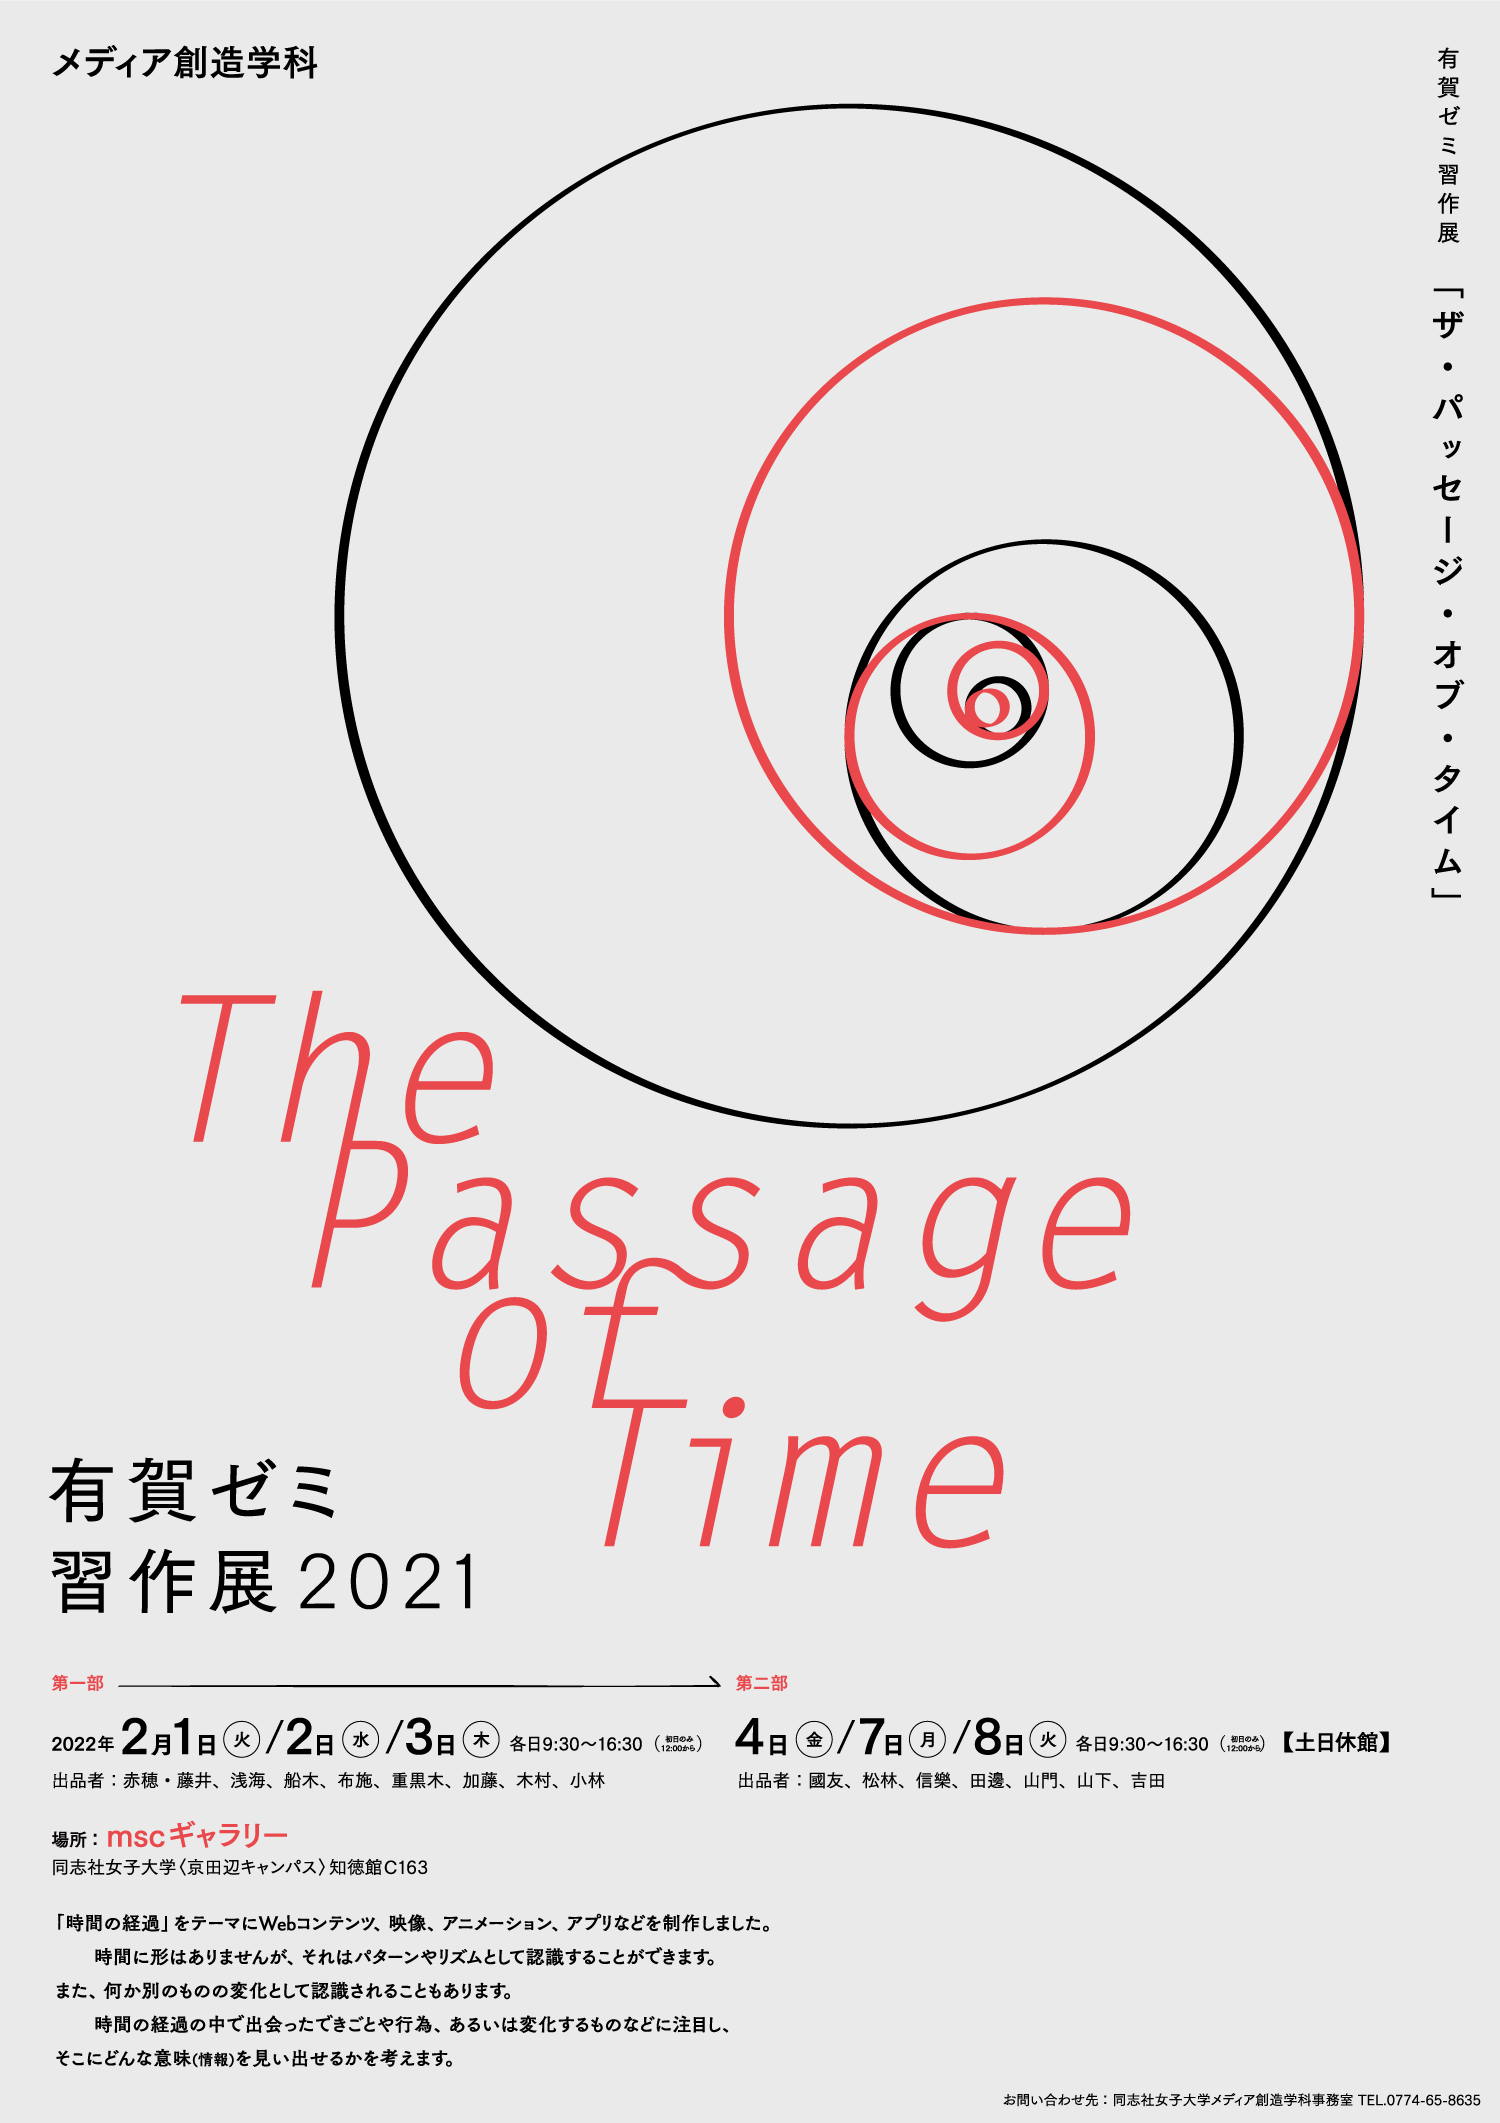 有賀ゼミ習作展2021「The Passage of Time」